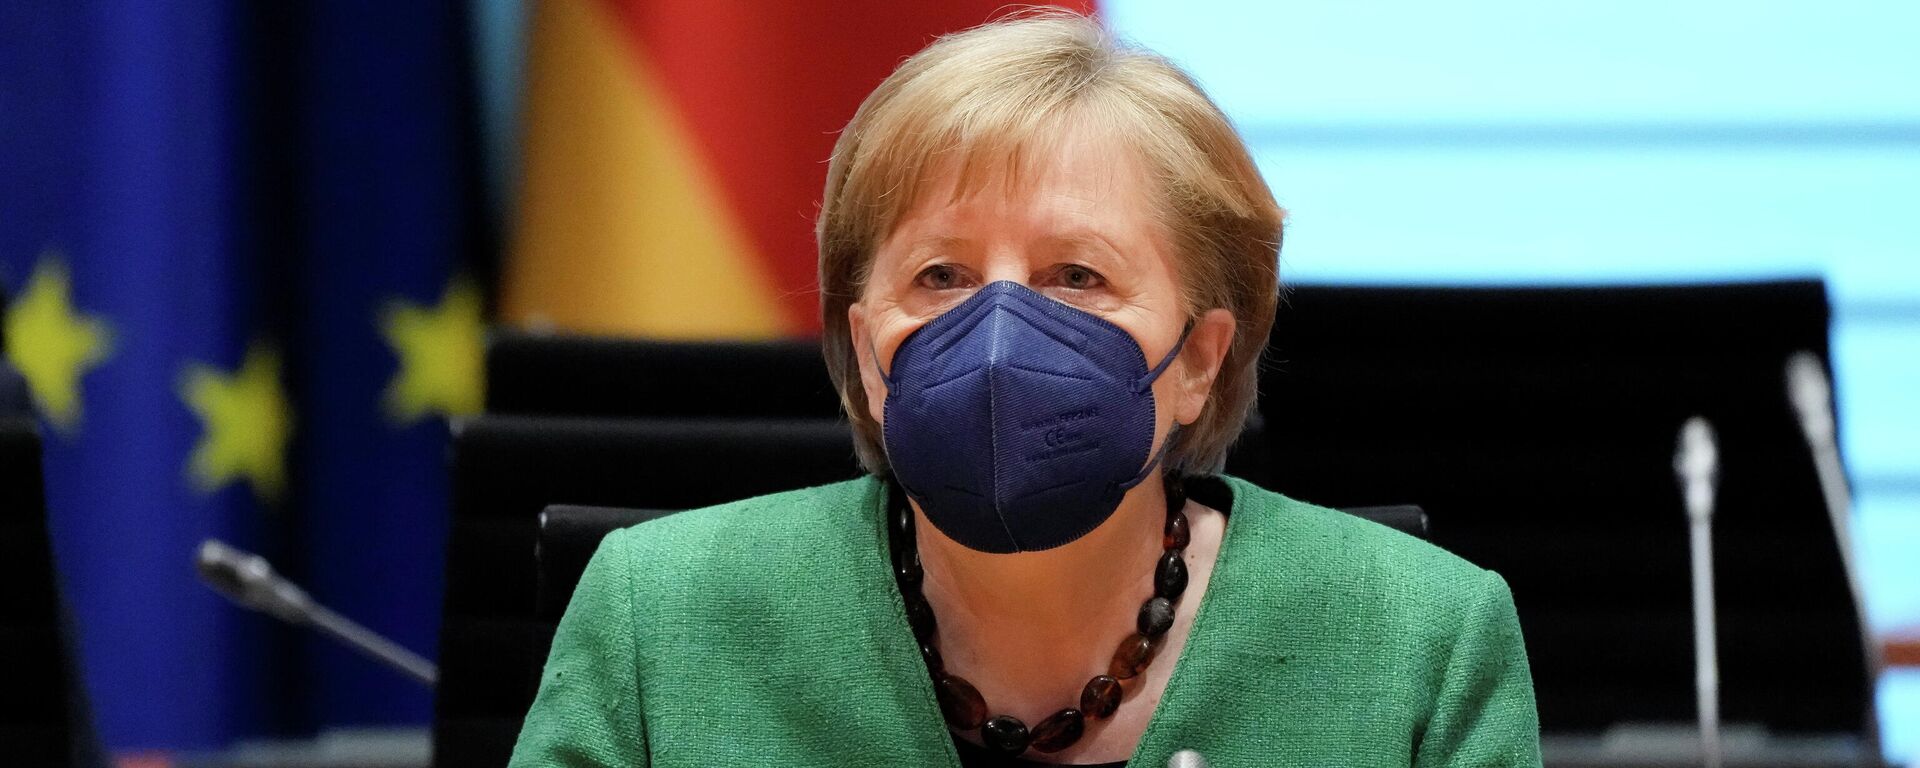 Angela Merkel, la canciller alemana - Sputnik Mundo, 1920, 26.05.2021